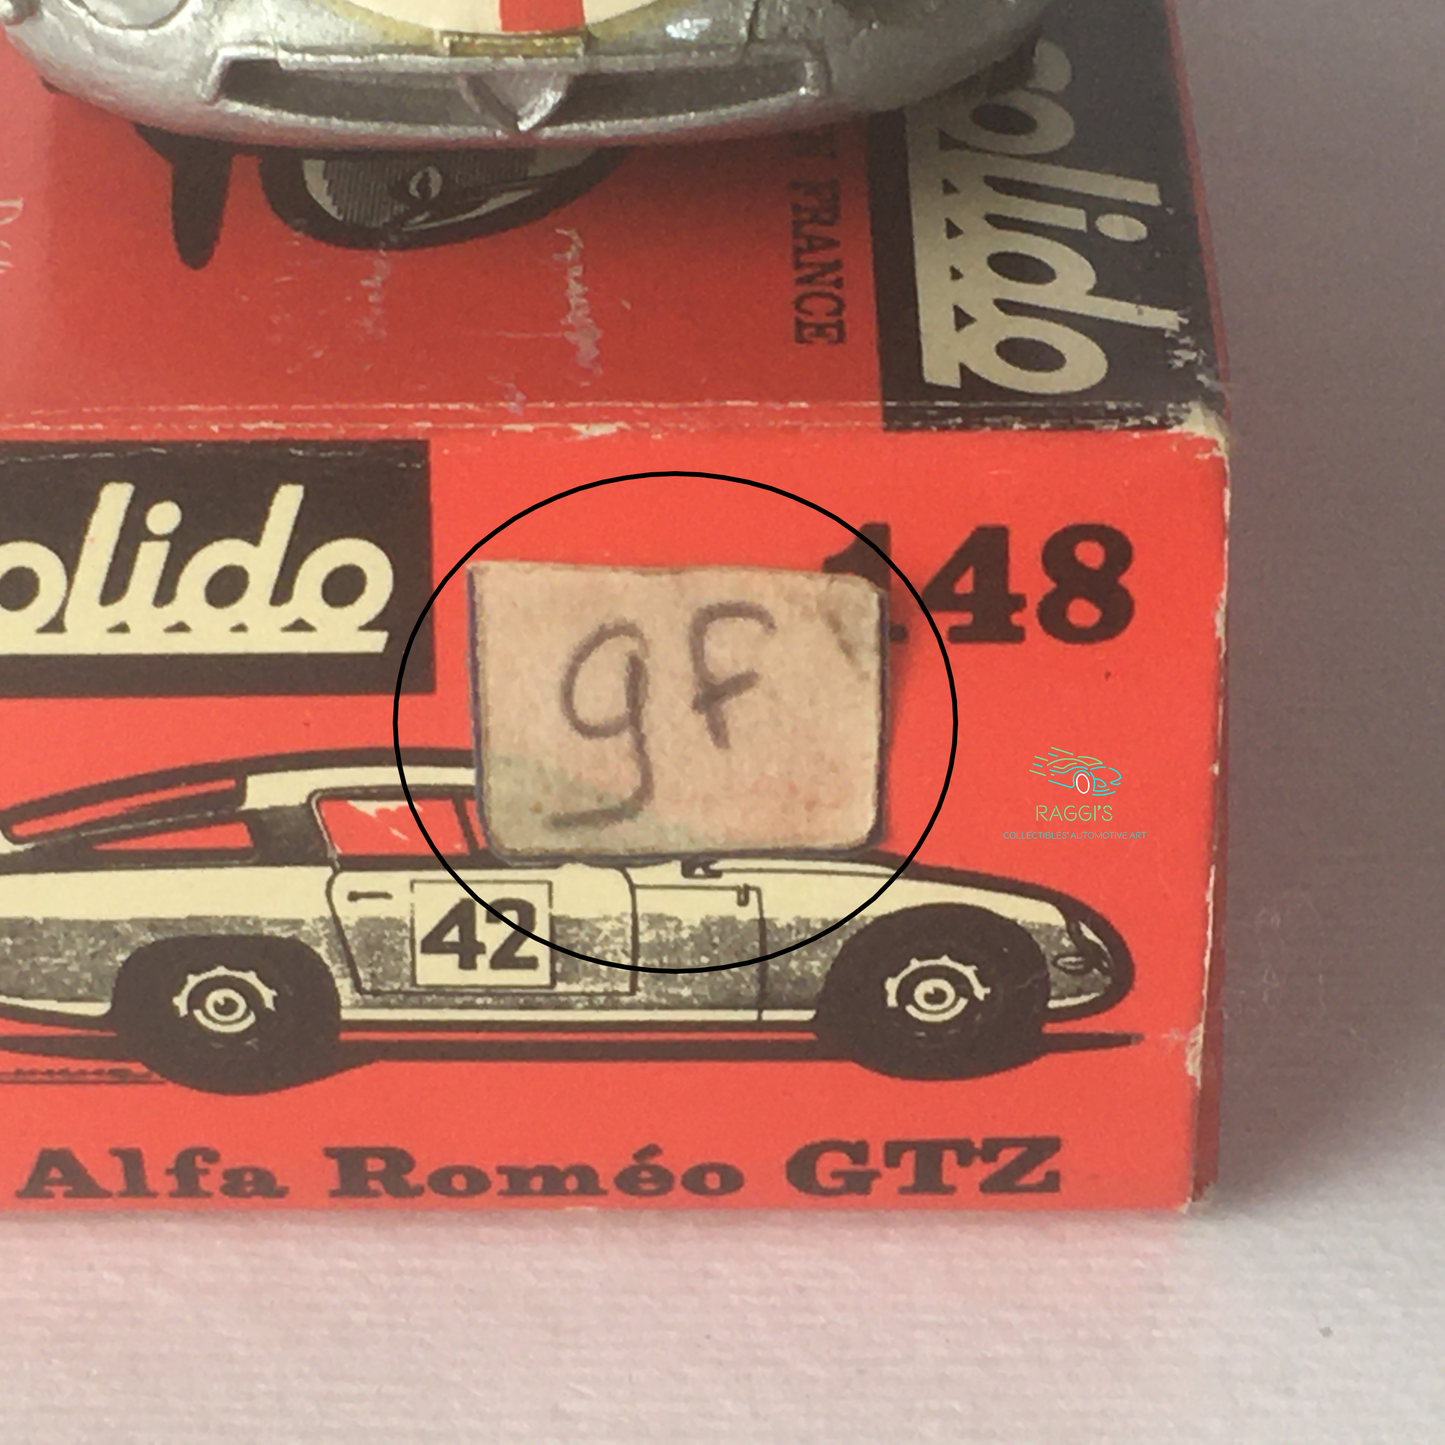 Alfa Romeo, Modellino in Metallo Pressofuso Solido Alfa Romeo Giulia TZ Ref. 148 Scala 1:43